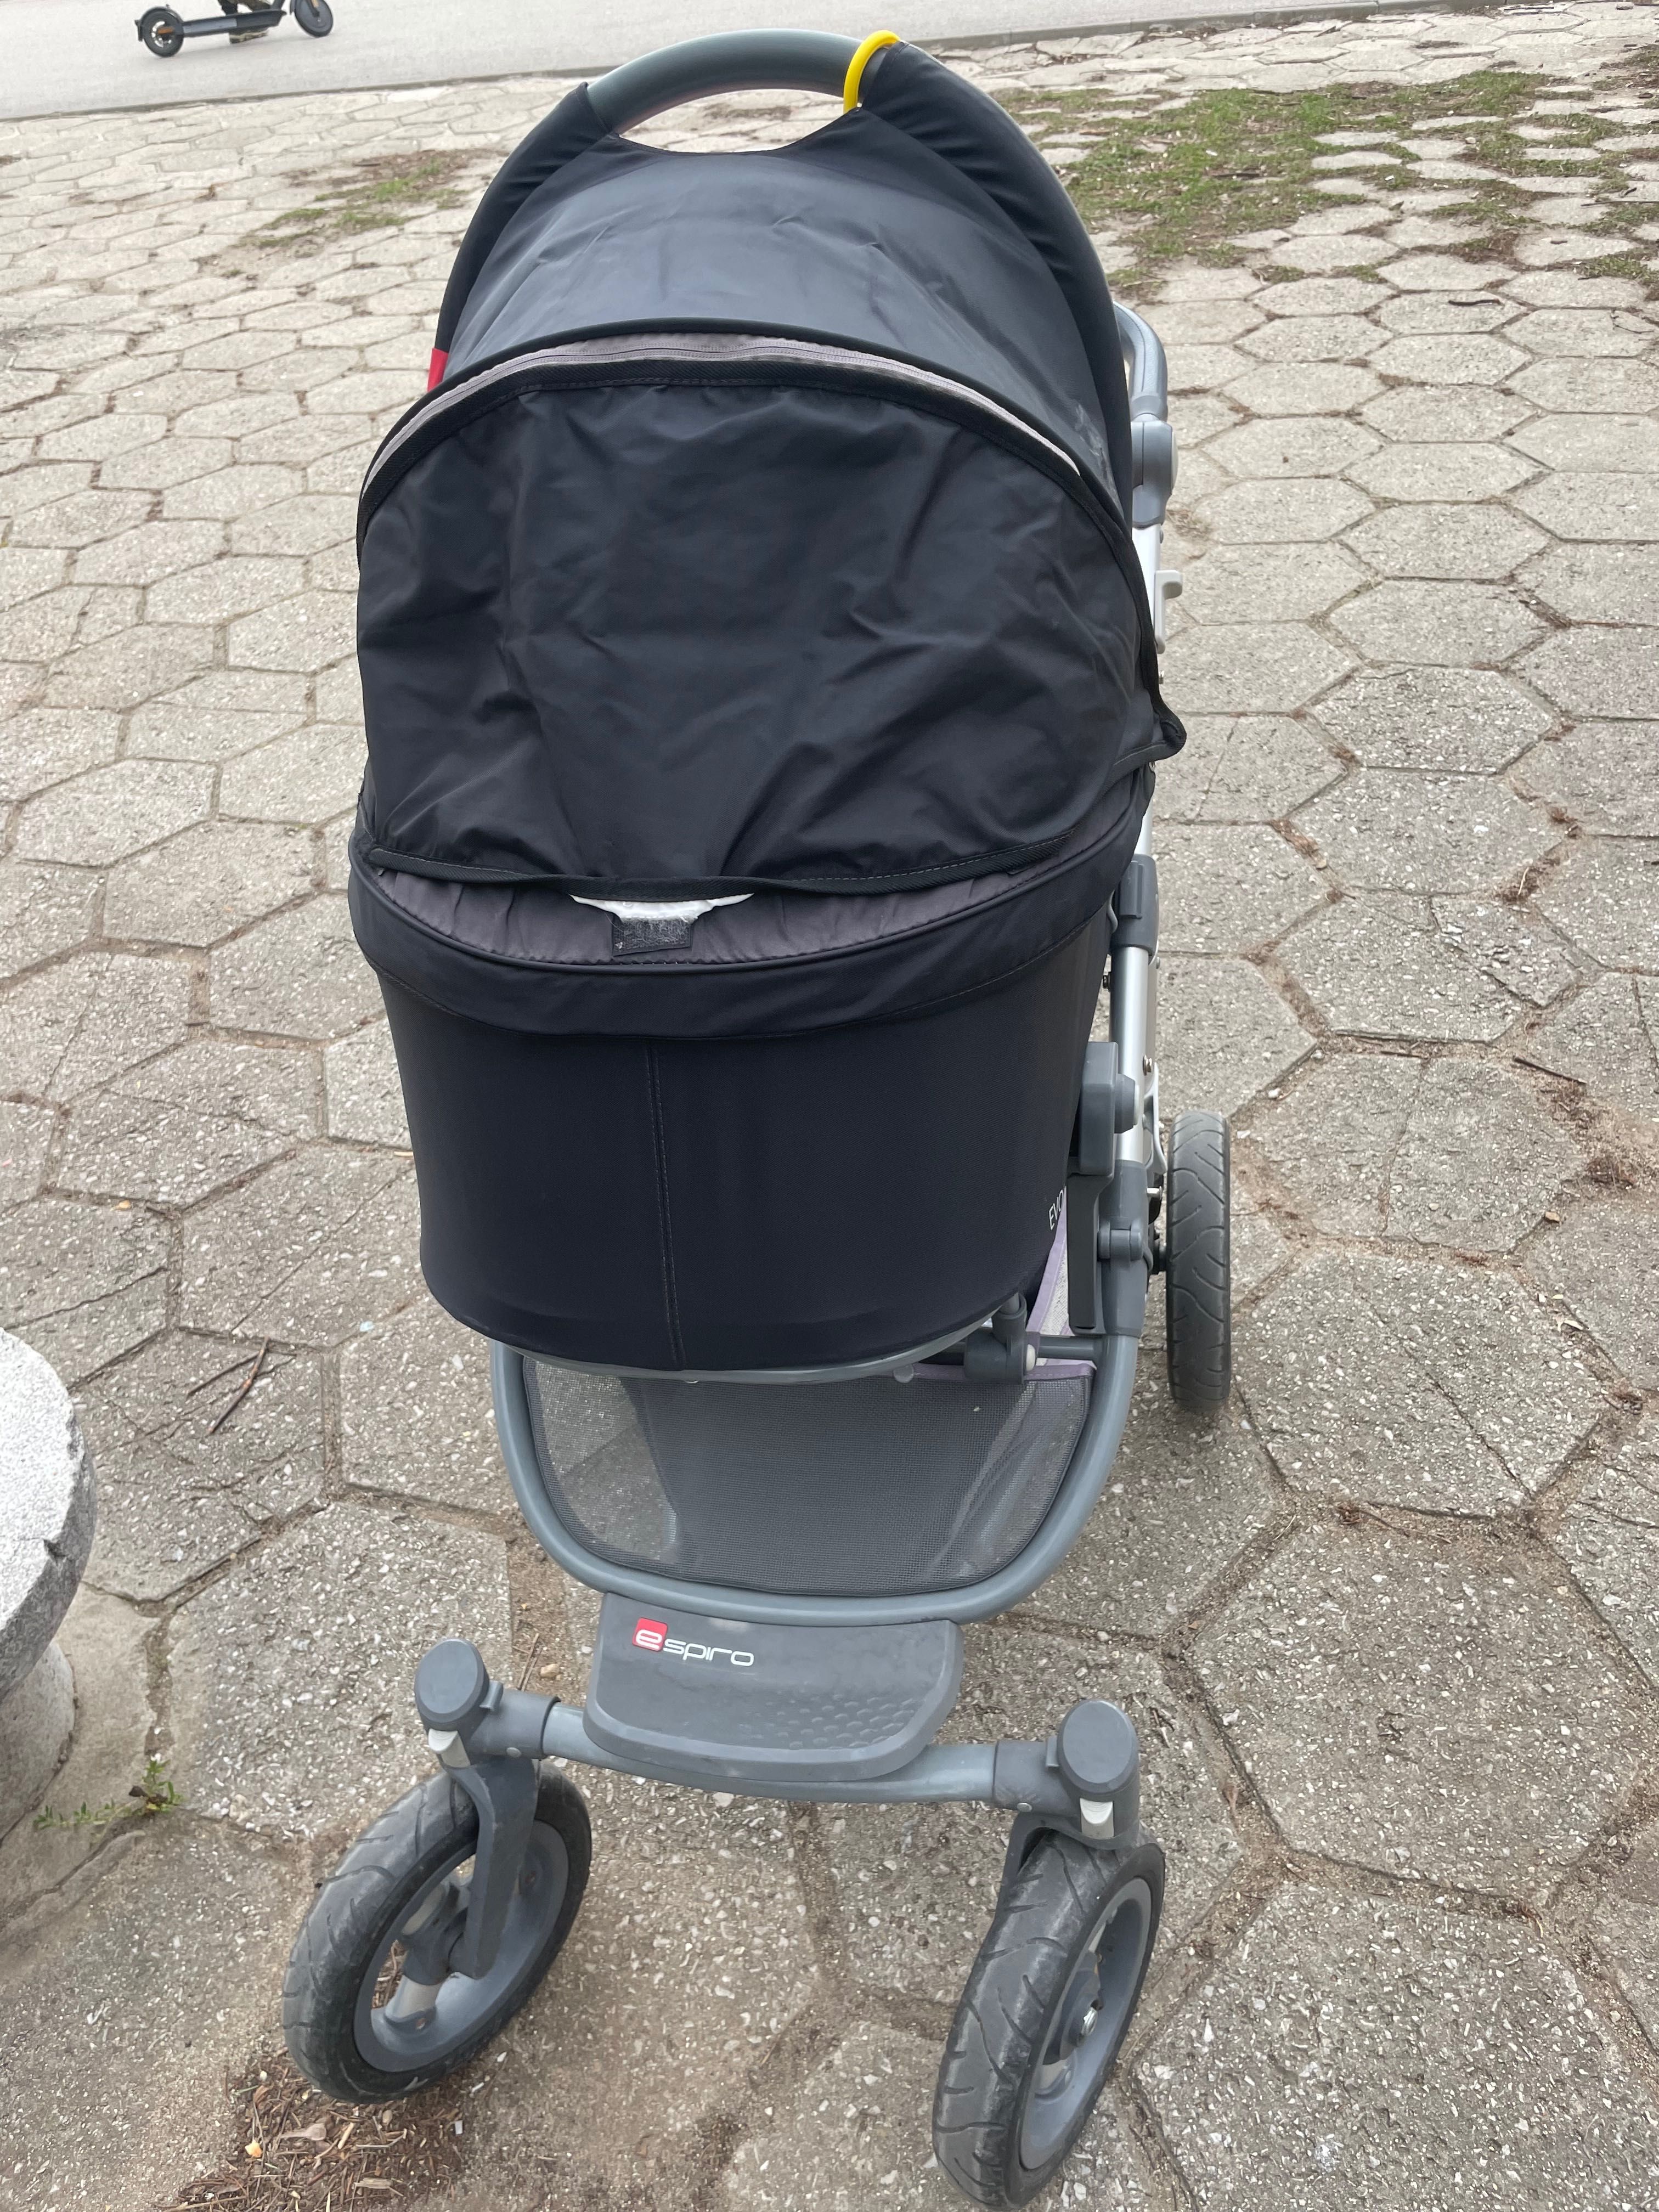 Комбинира бебешка количка ESPIRO ENZO EVO, заедно с кош за новородено.